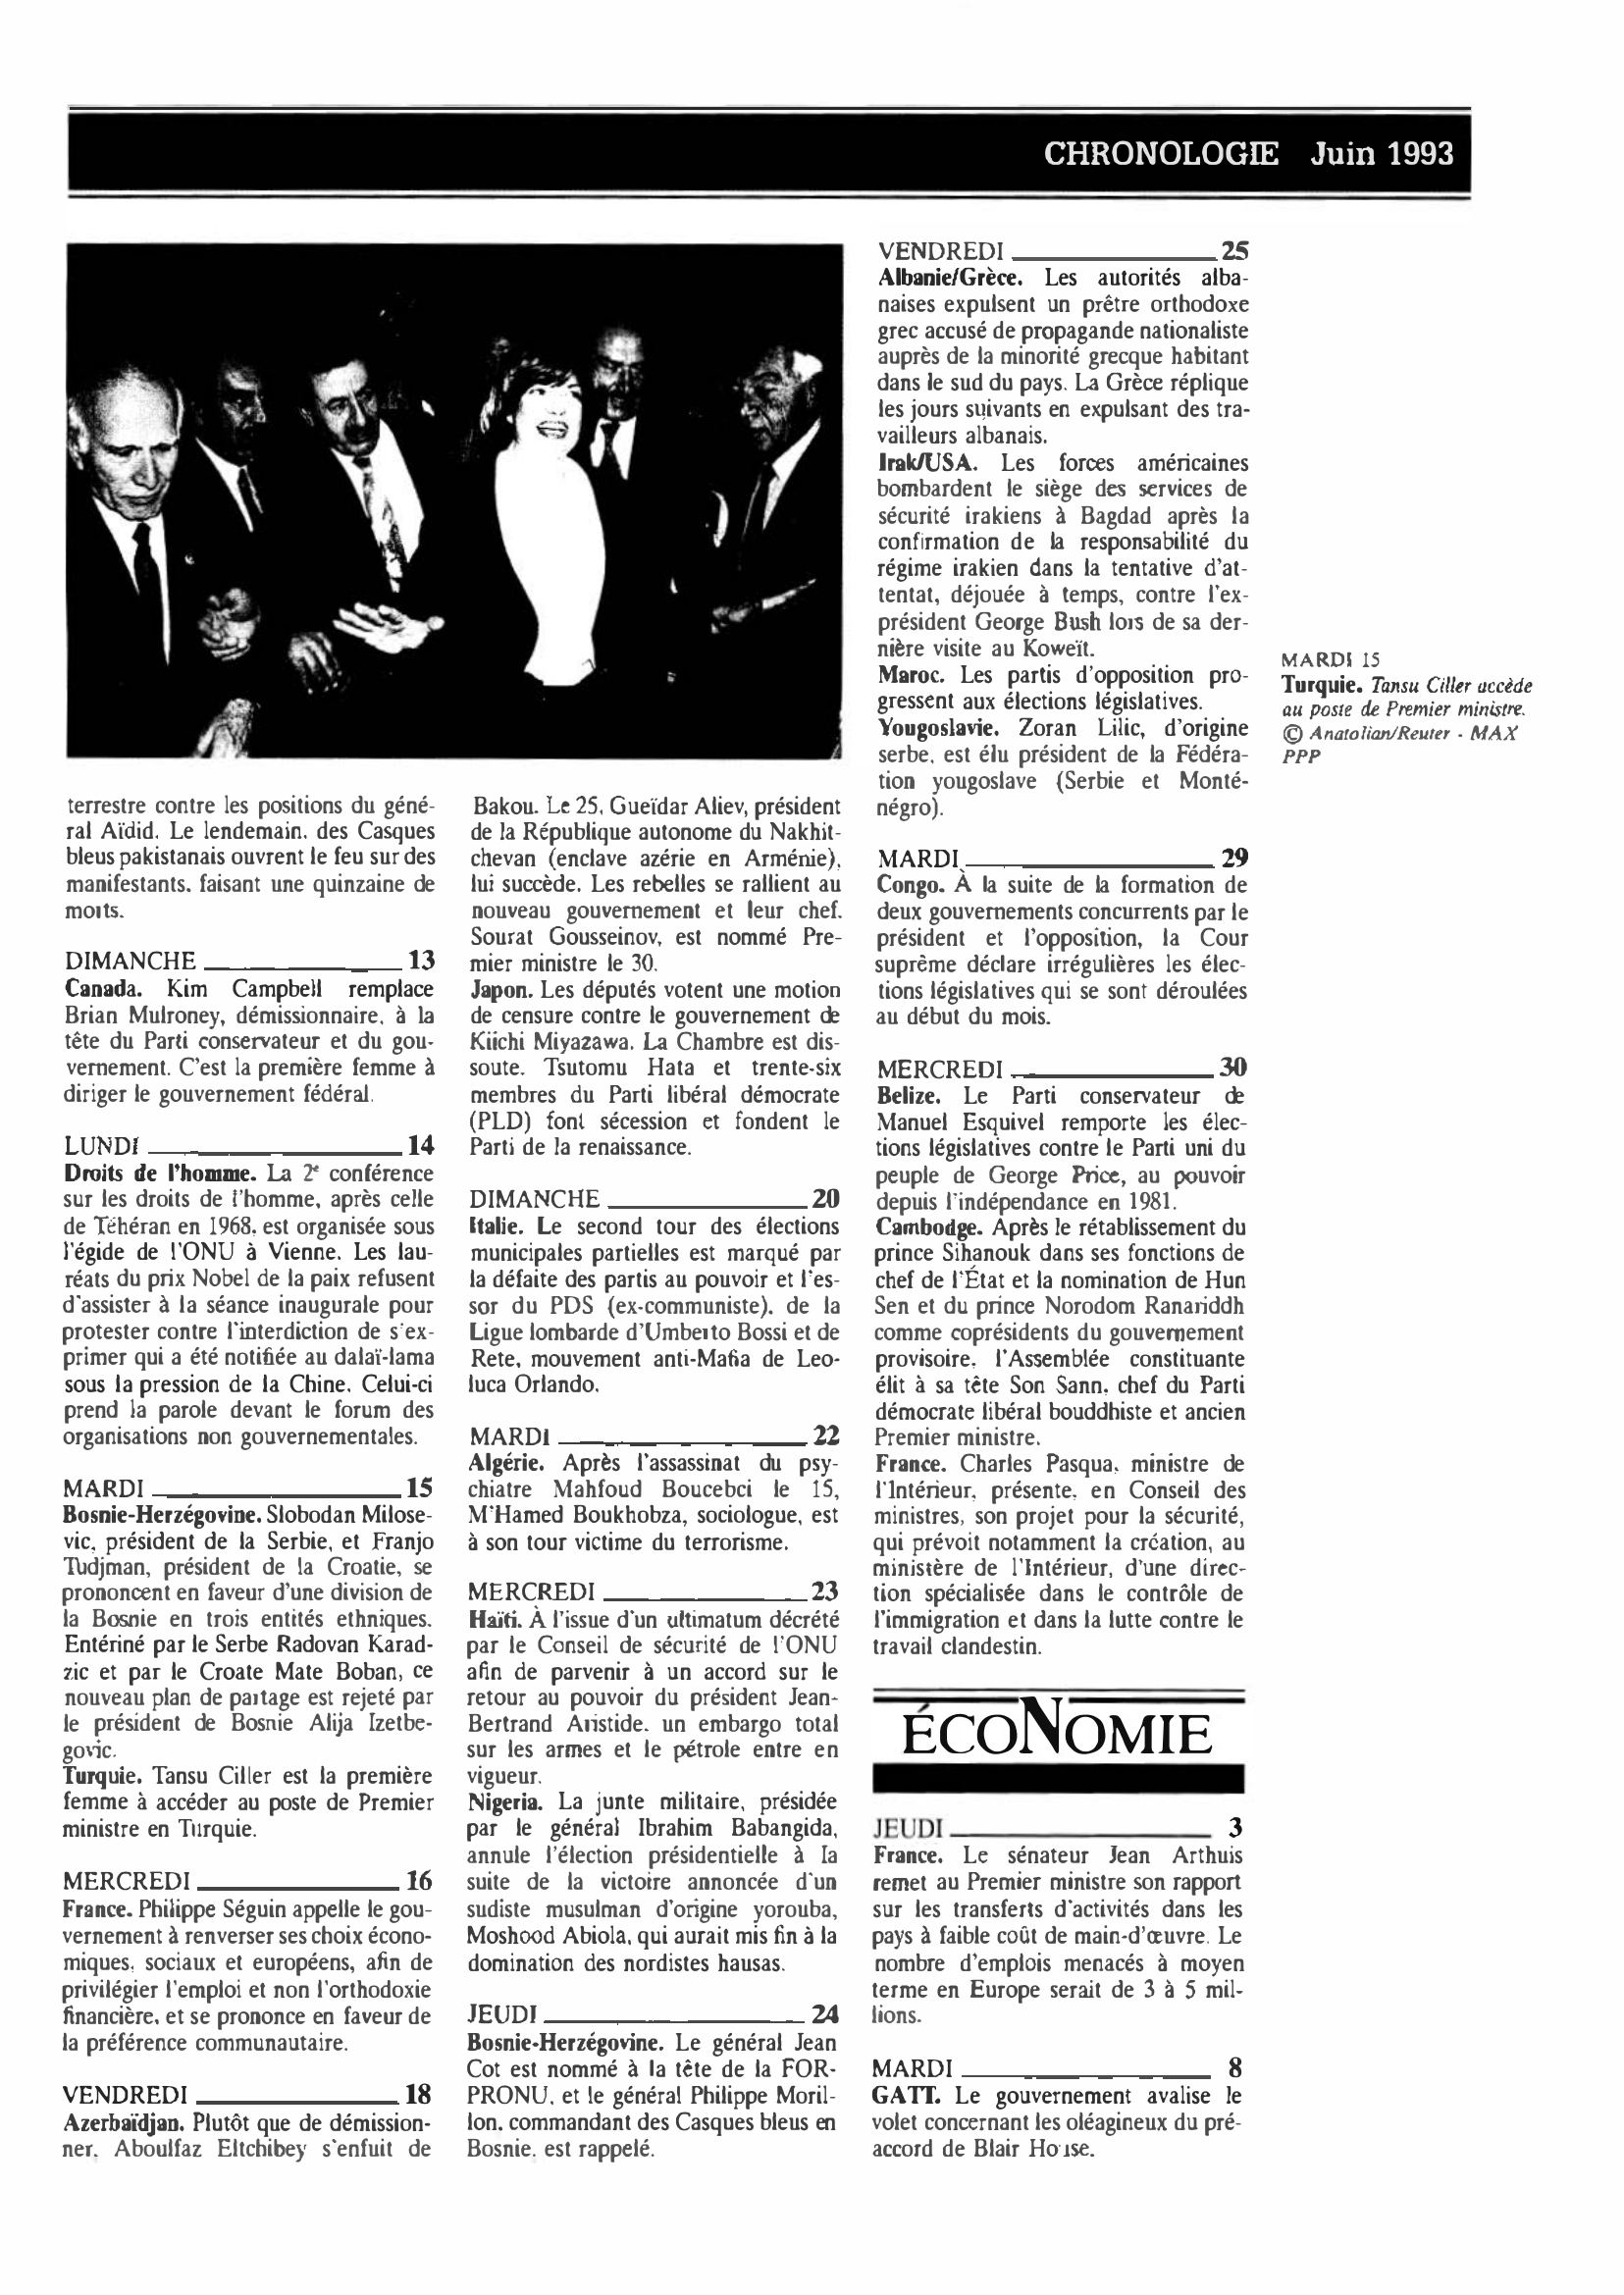 Prévisualisation du document CHRONOLOGIE Juin 1993 dans le monde (histoire chronologique)